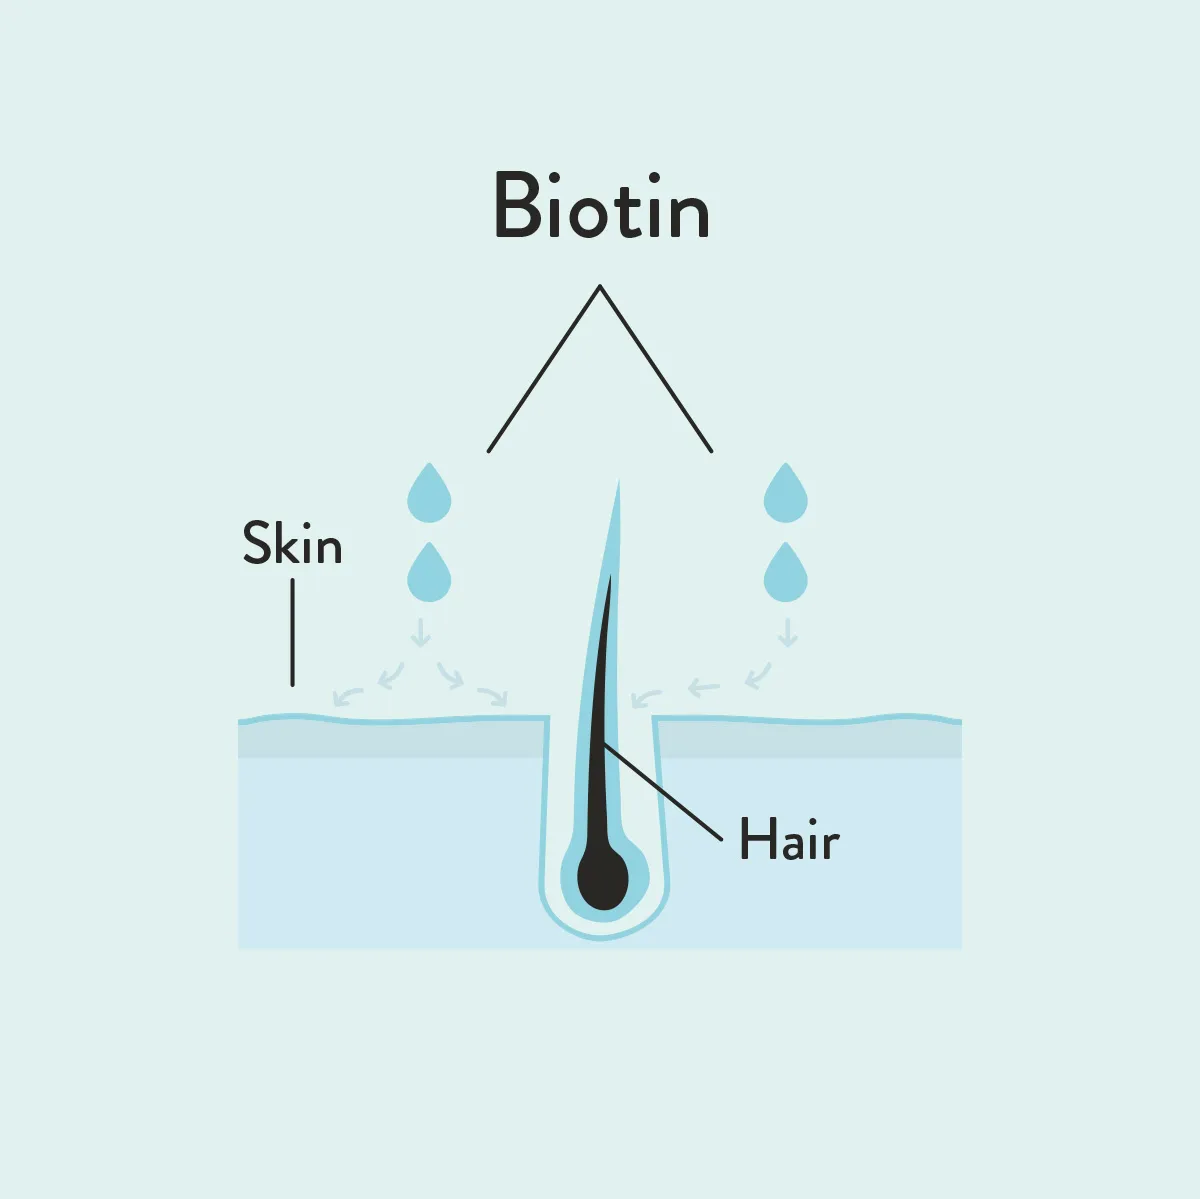 Biotin informative diagram